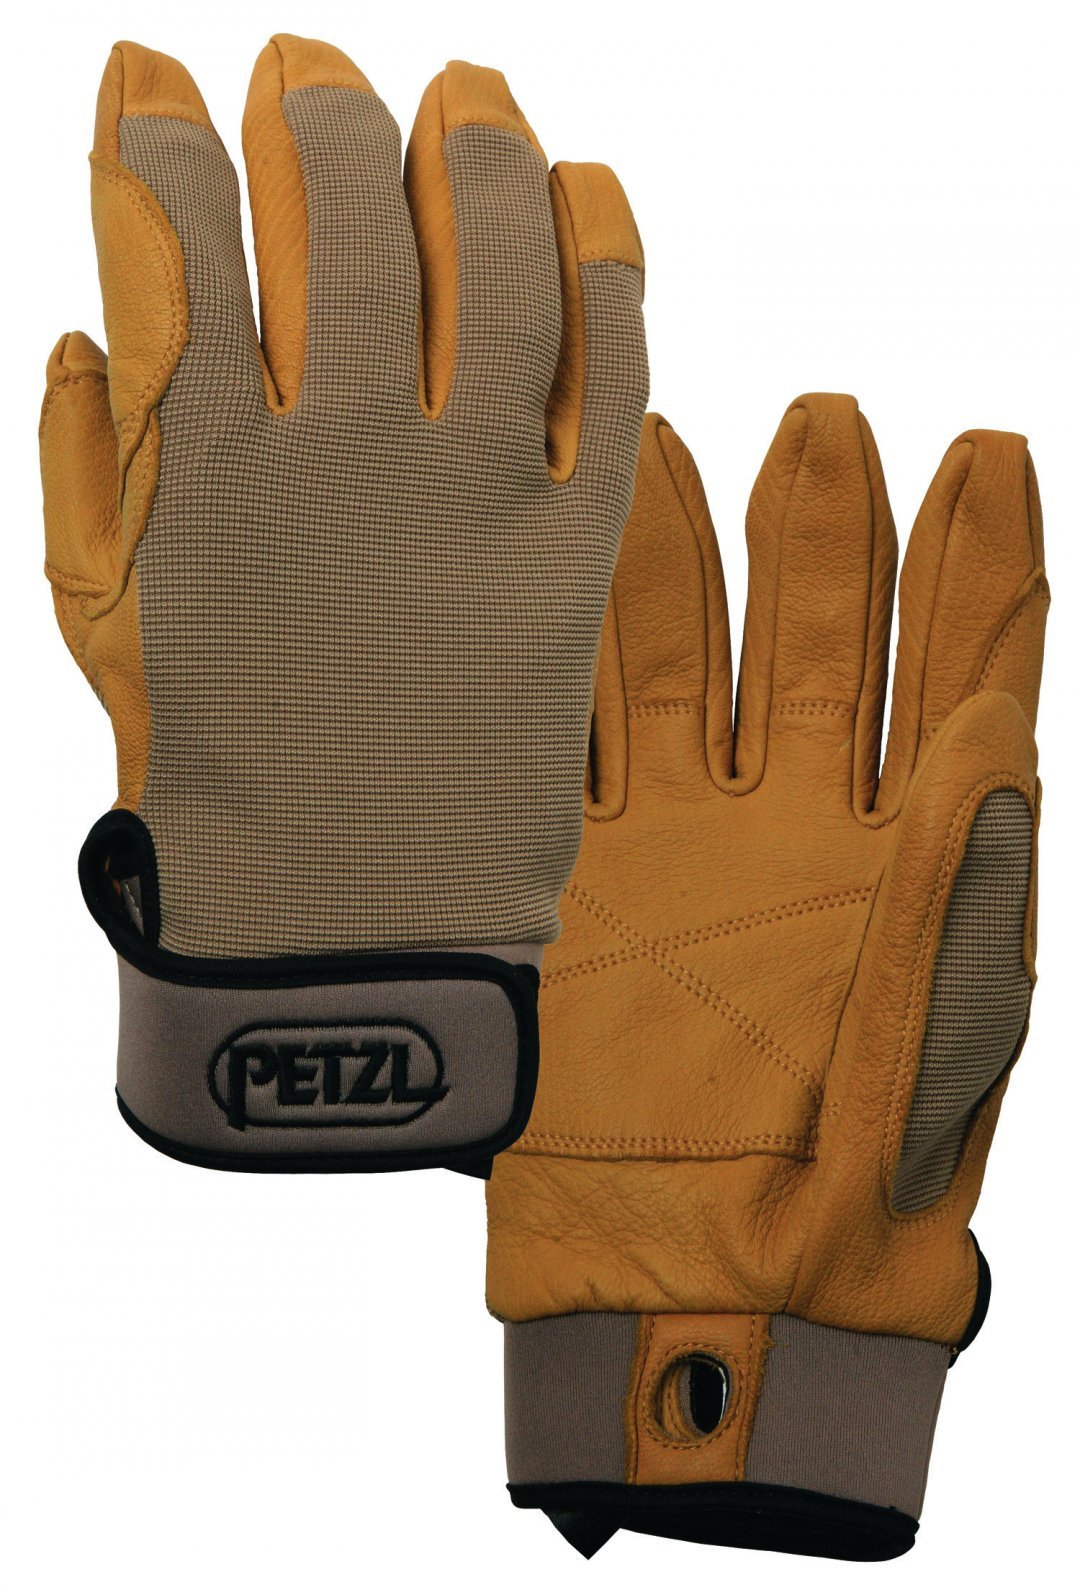 Petzl Cordex Lightweight Gloves